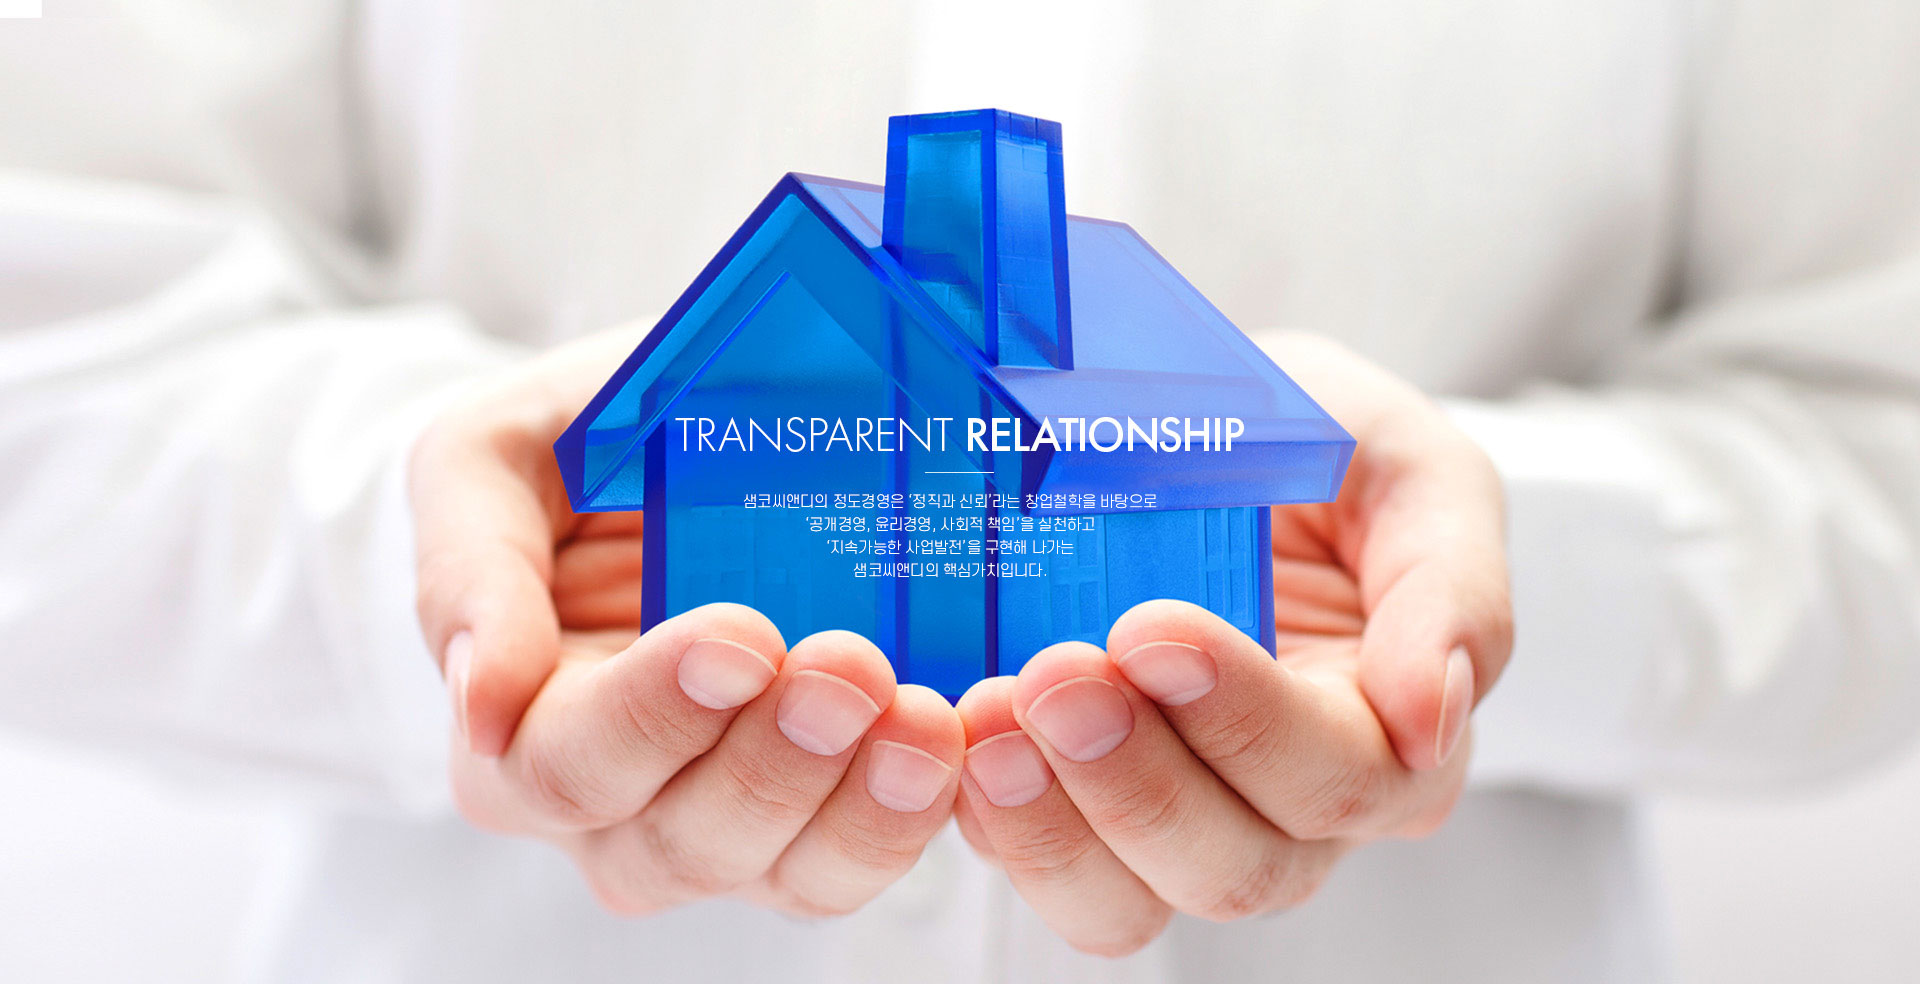 Transparent Relationship
사람사이의 투명한 관계, 신뢰는 SAMCO가 추구하는 기본 가치입니다.